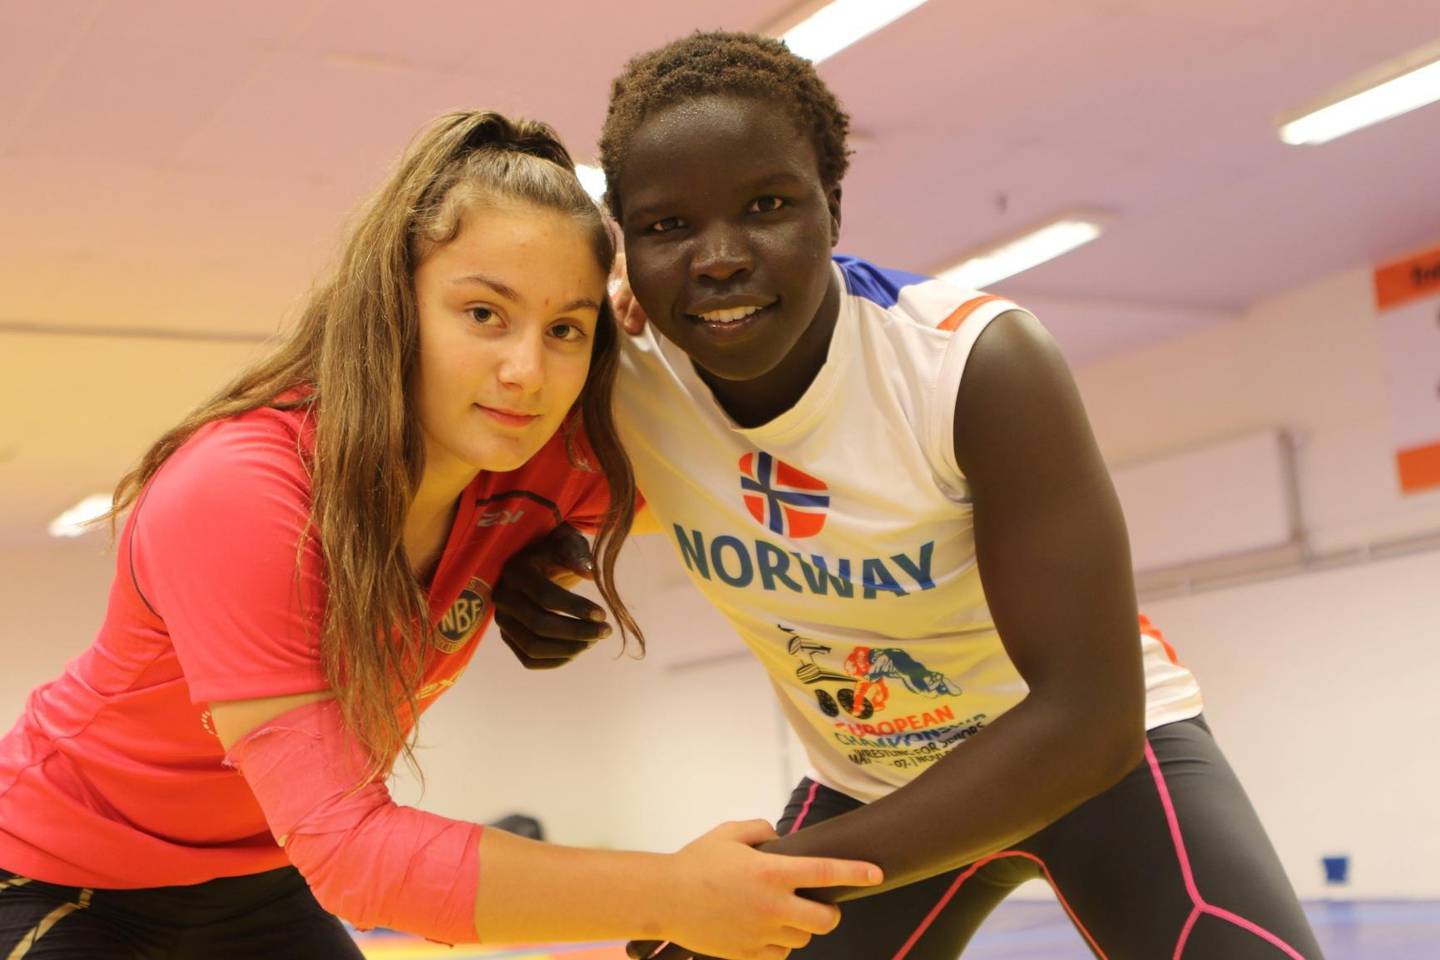 Othelie Høie(16) og Grace Bullen (22) jakter på nye medaljer og mesterskapspaller. Her i vennskapelig positur.